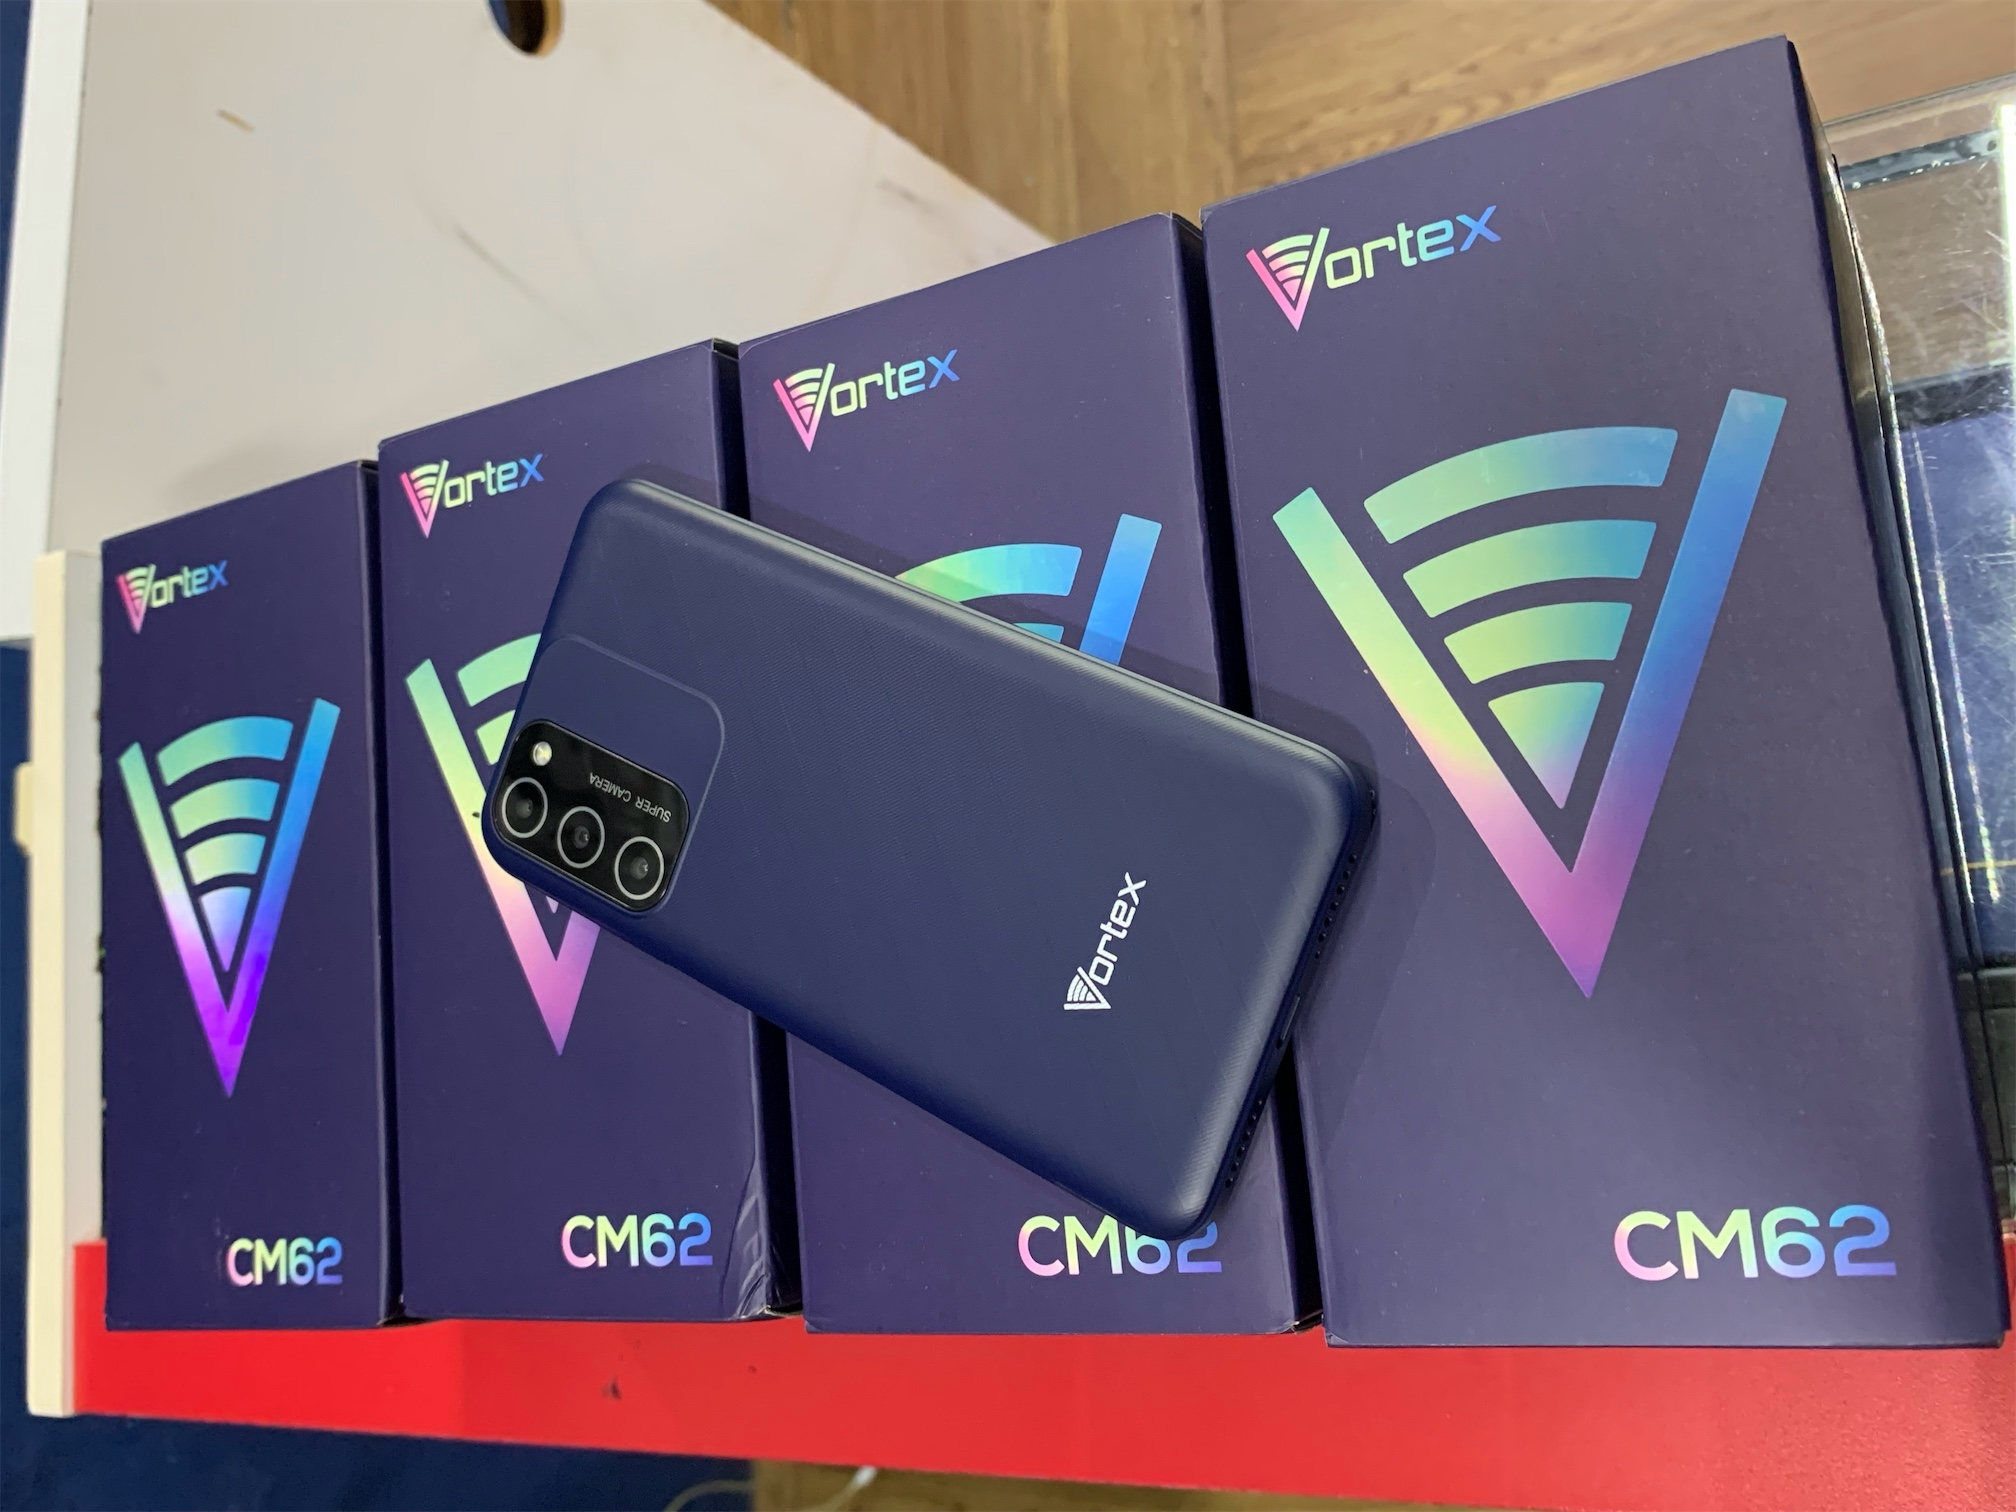 celulares y tabletas - VORTEX CM62 4